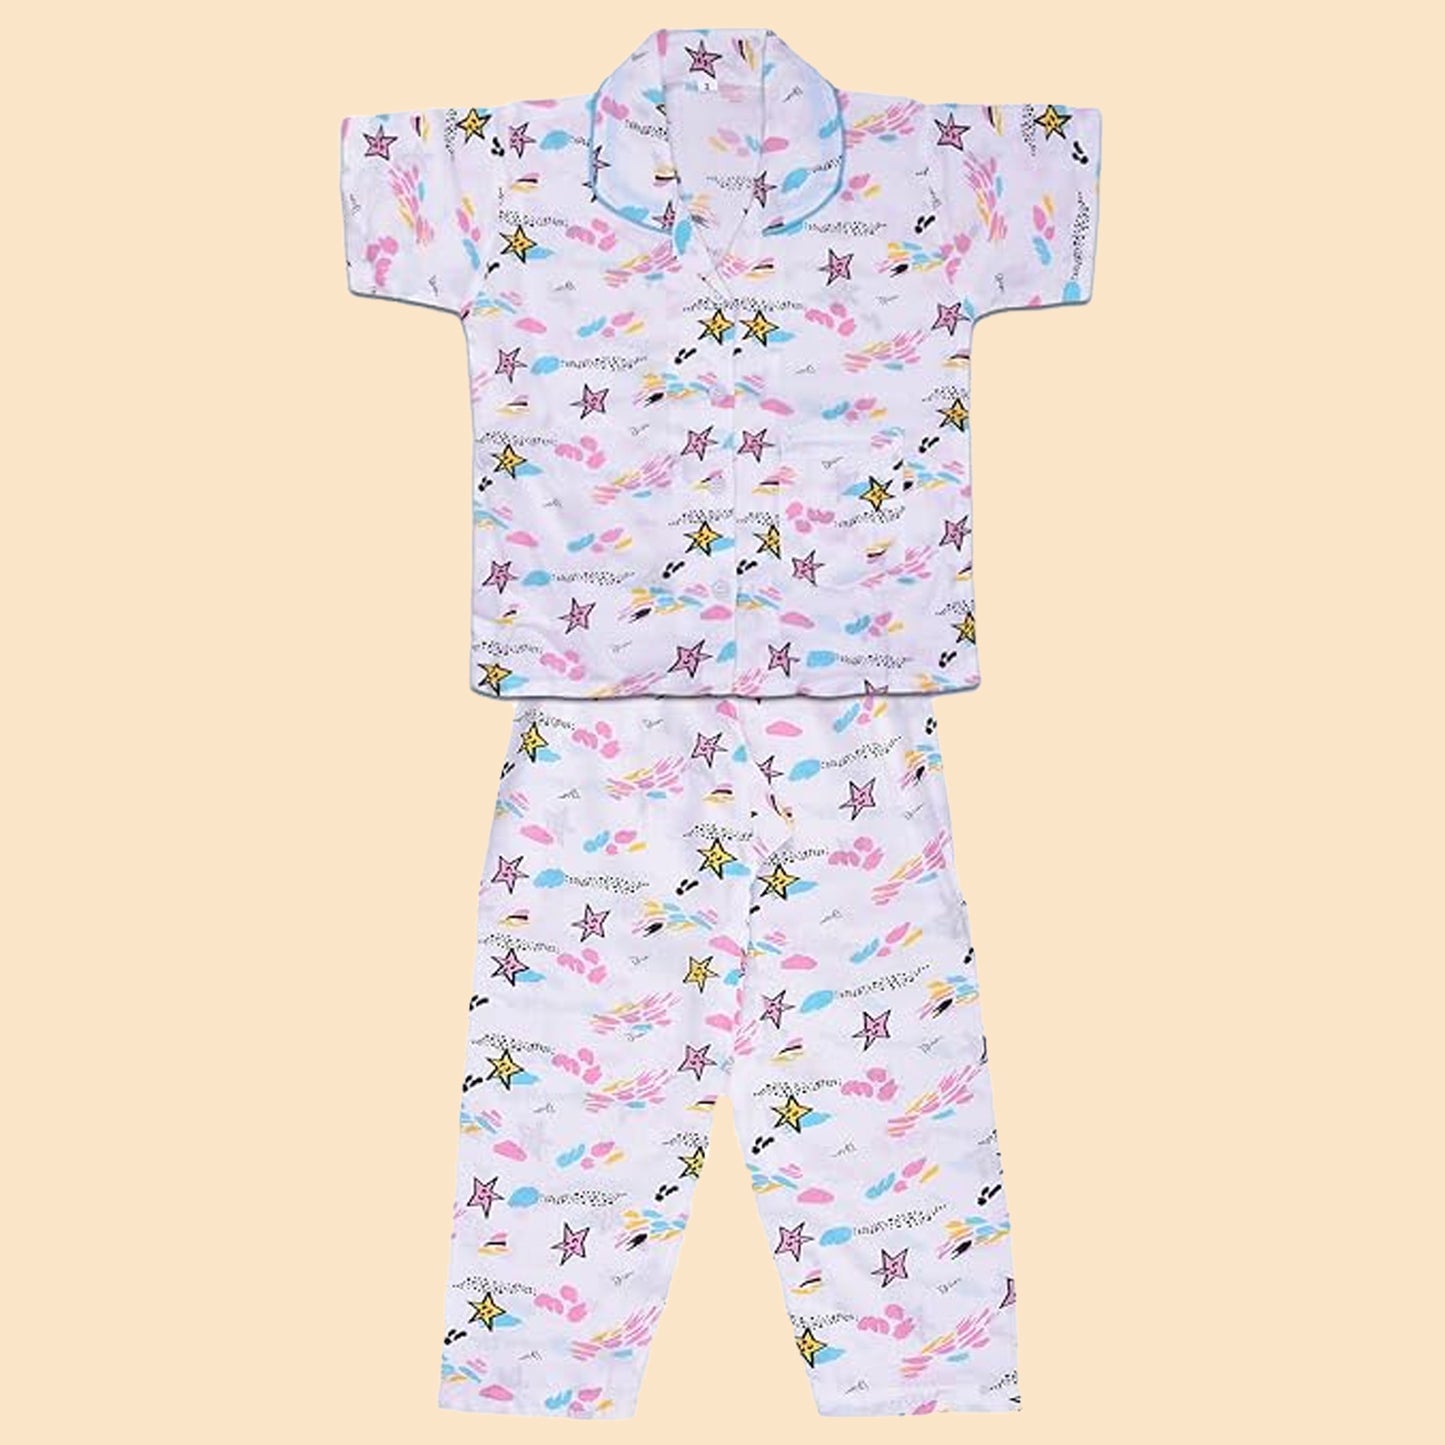 Unisex Printed Top and Bottom Pyjamas Night Dress